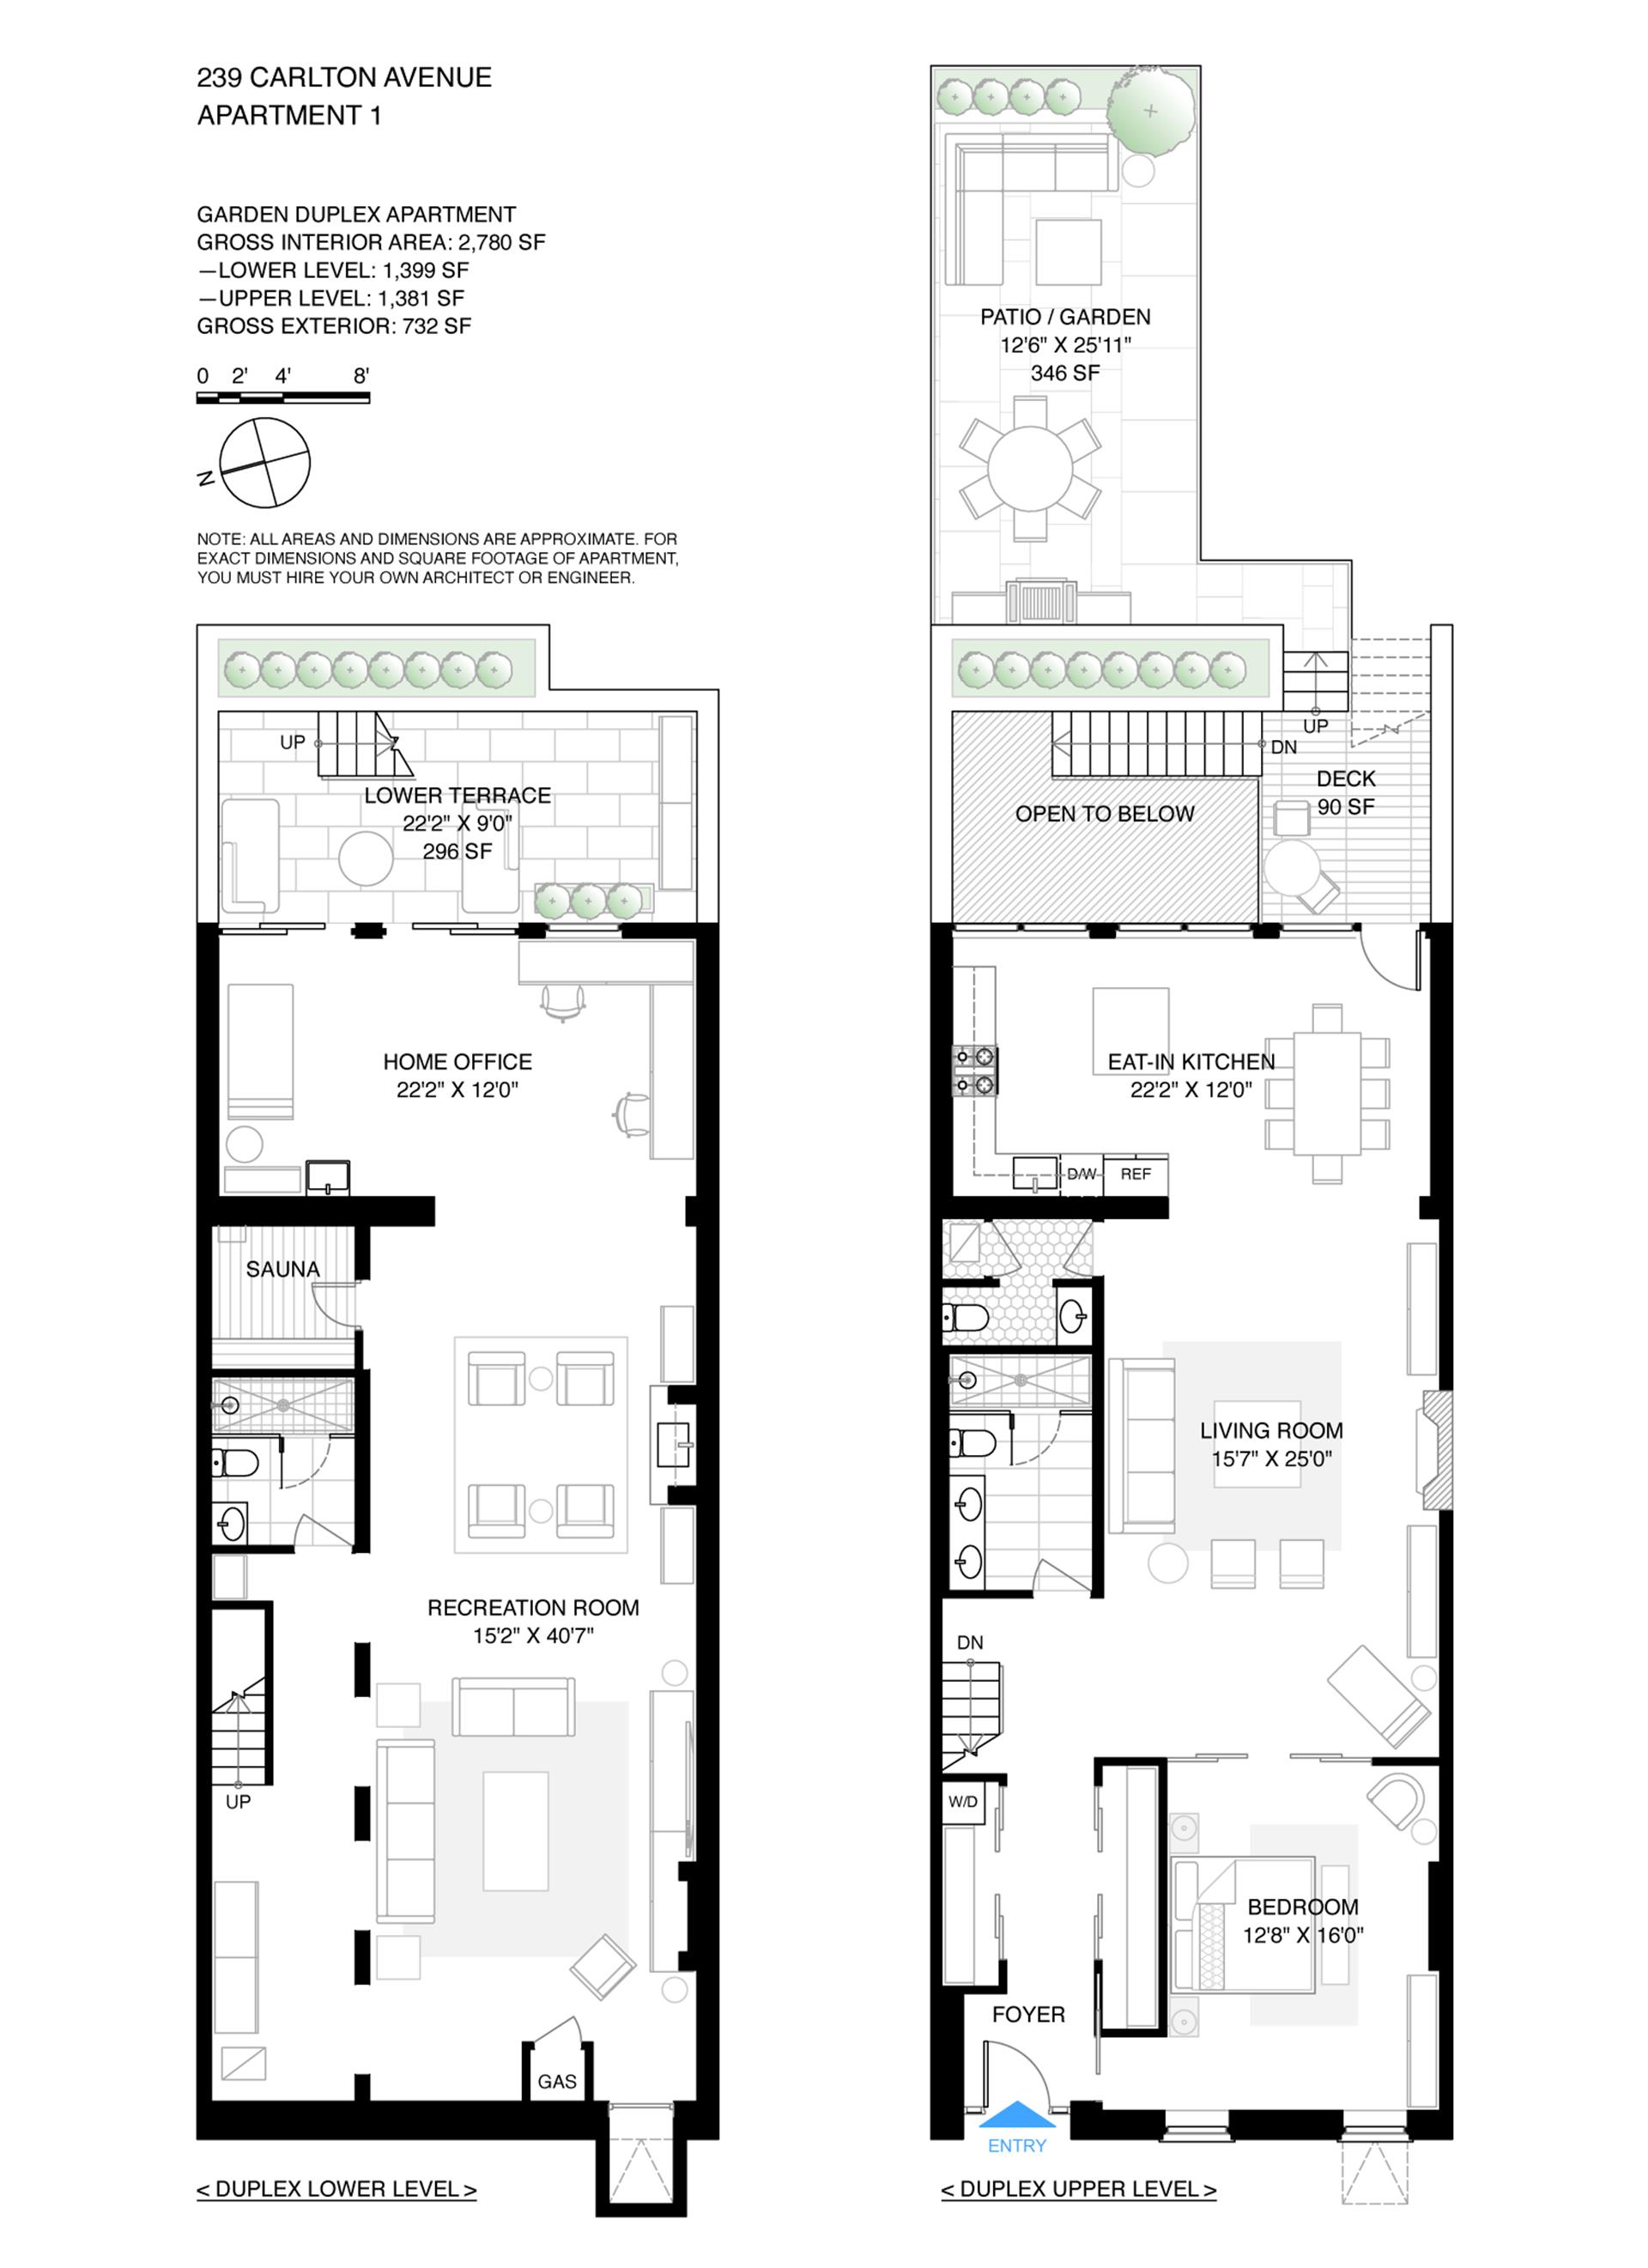 Floorplan for 239 Carlton Avenue, GRDN